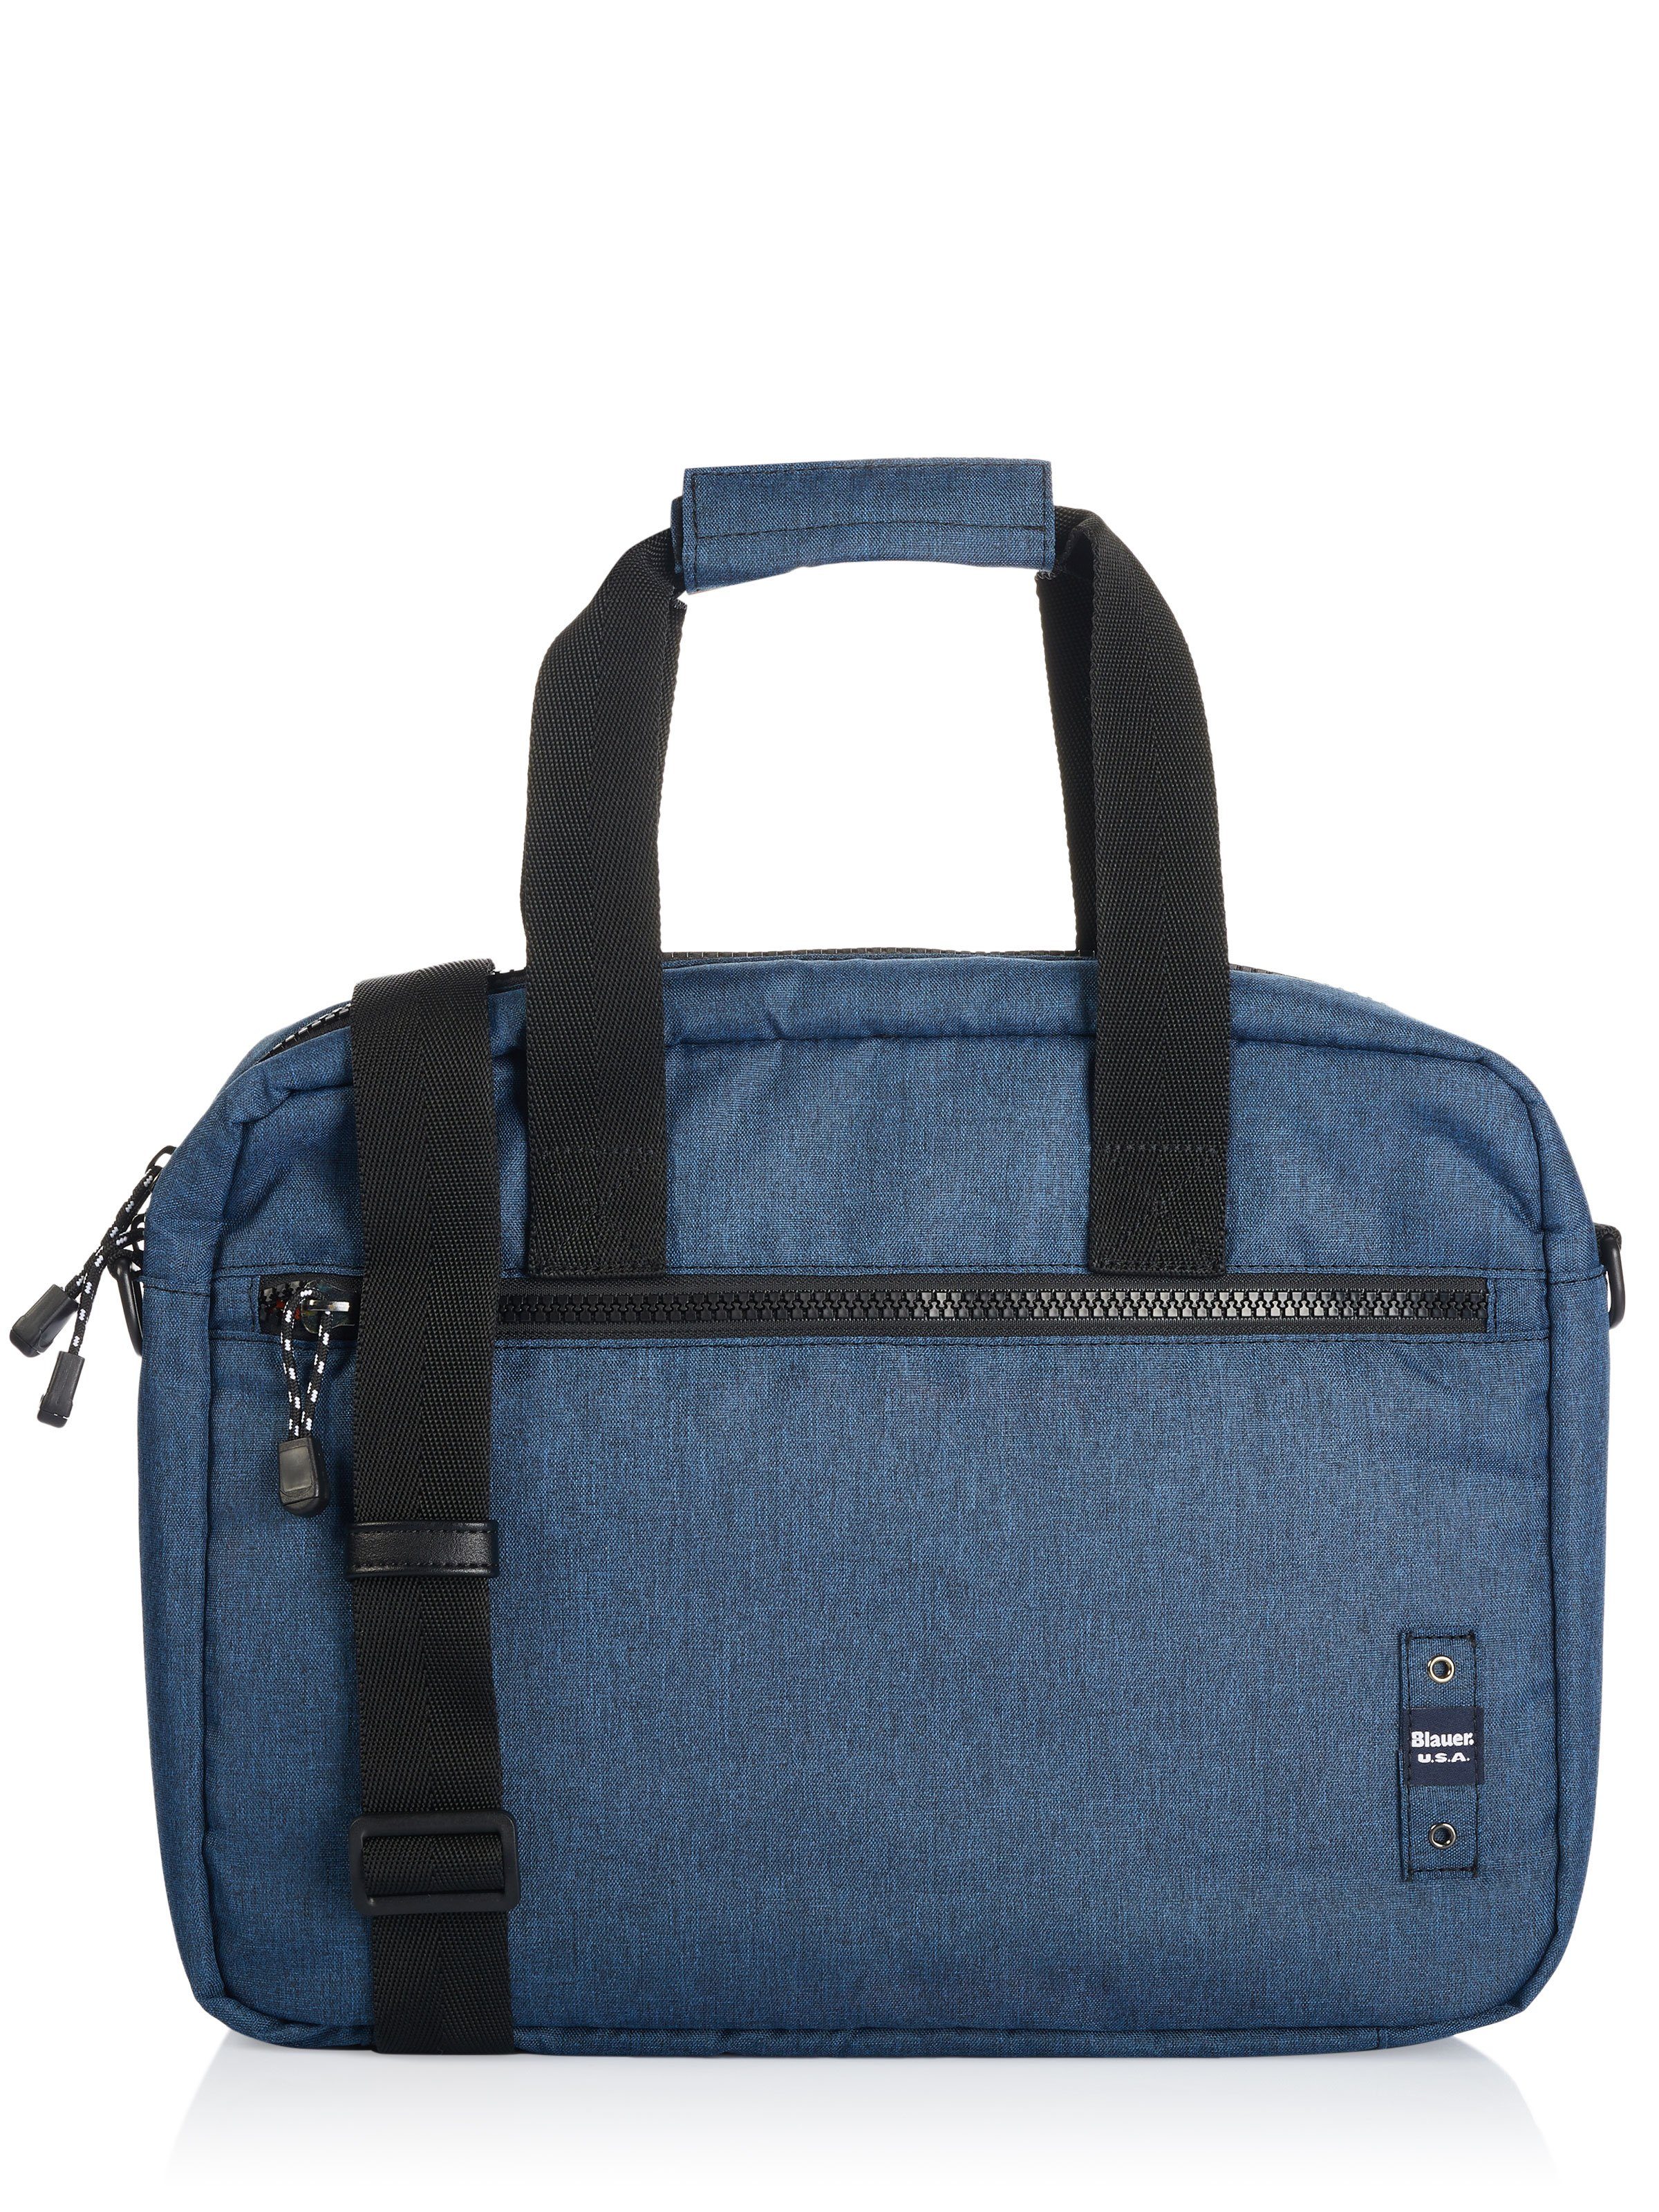 Blauer.USA Laptoptasche Blauer Tasche